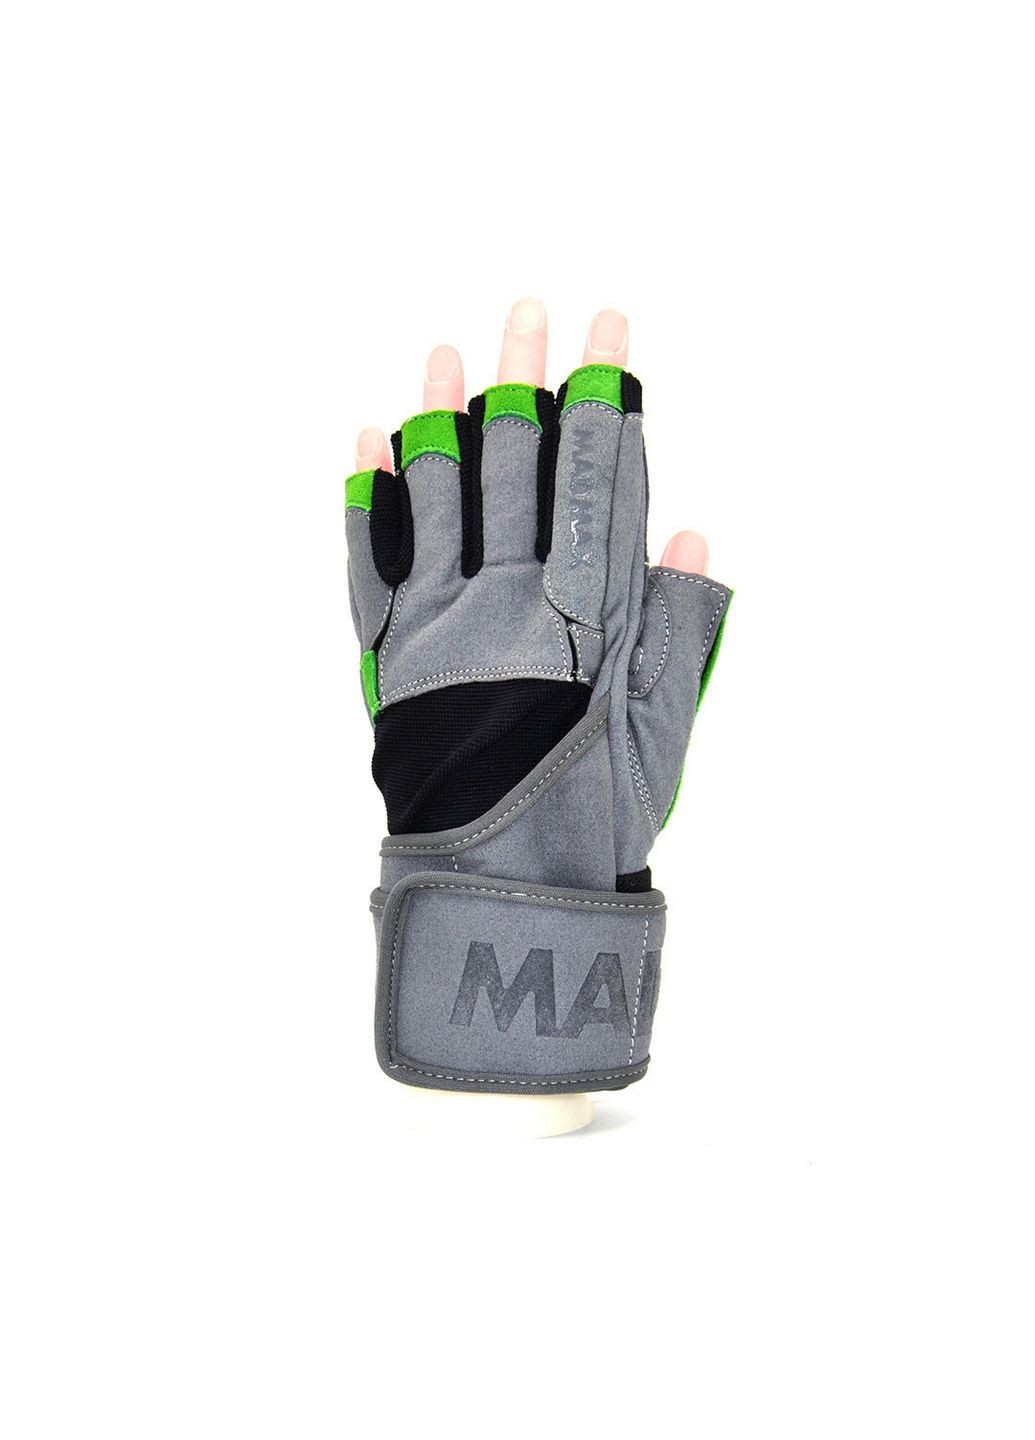 Унисекс перчатки для фитнеса S Mad Max (279321247)